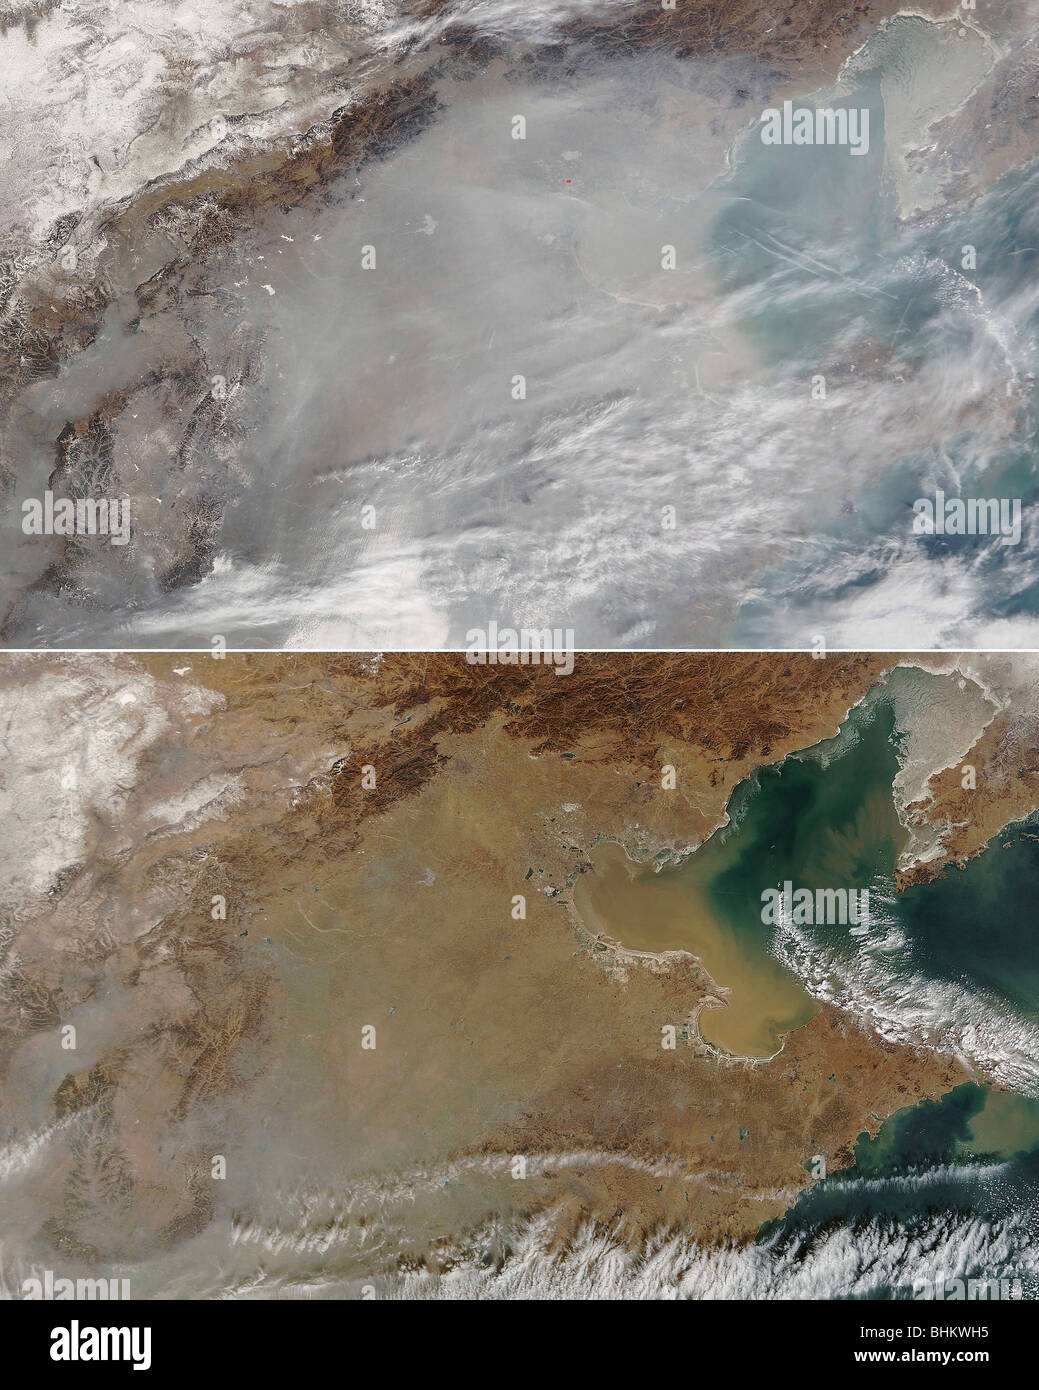 Umweltverschmutzung in China wie in diese Satellitenbilder gesehen Stockfoto